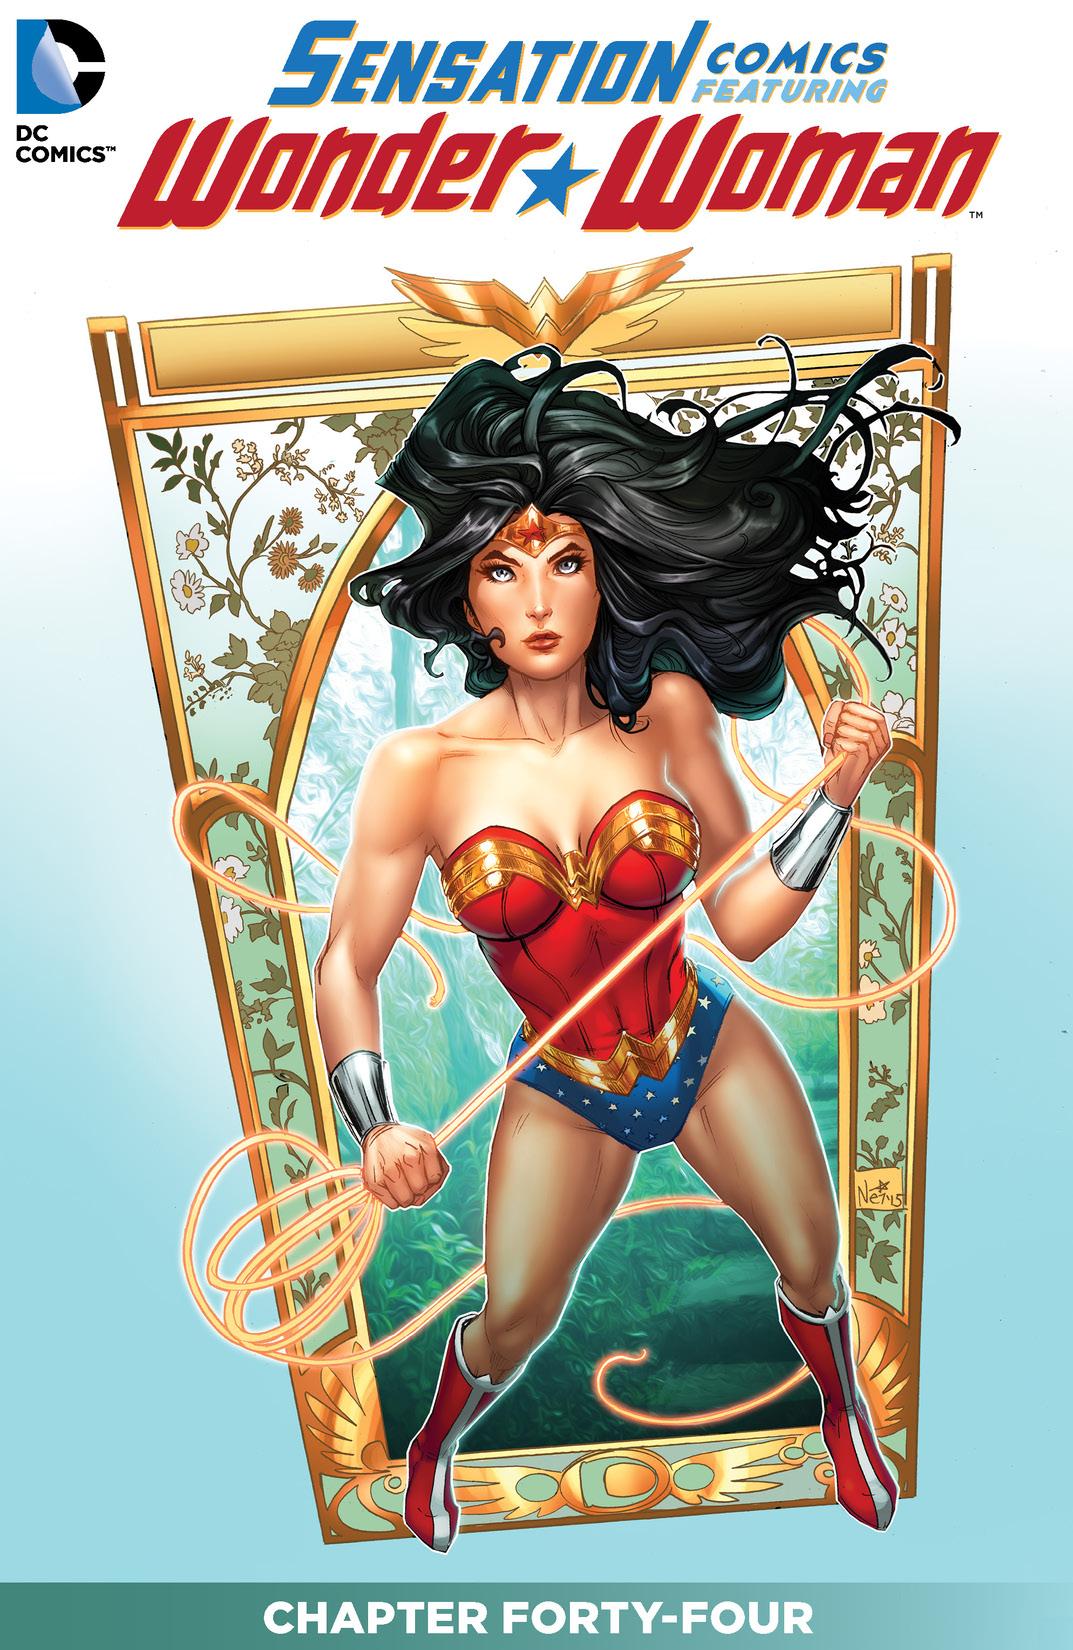 Sensation Comics Featuring Wonder Woman #44 preview images